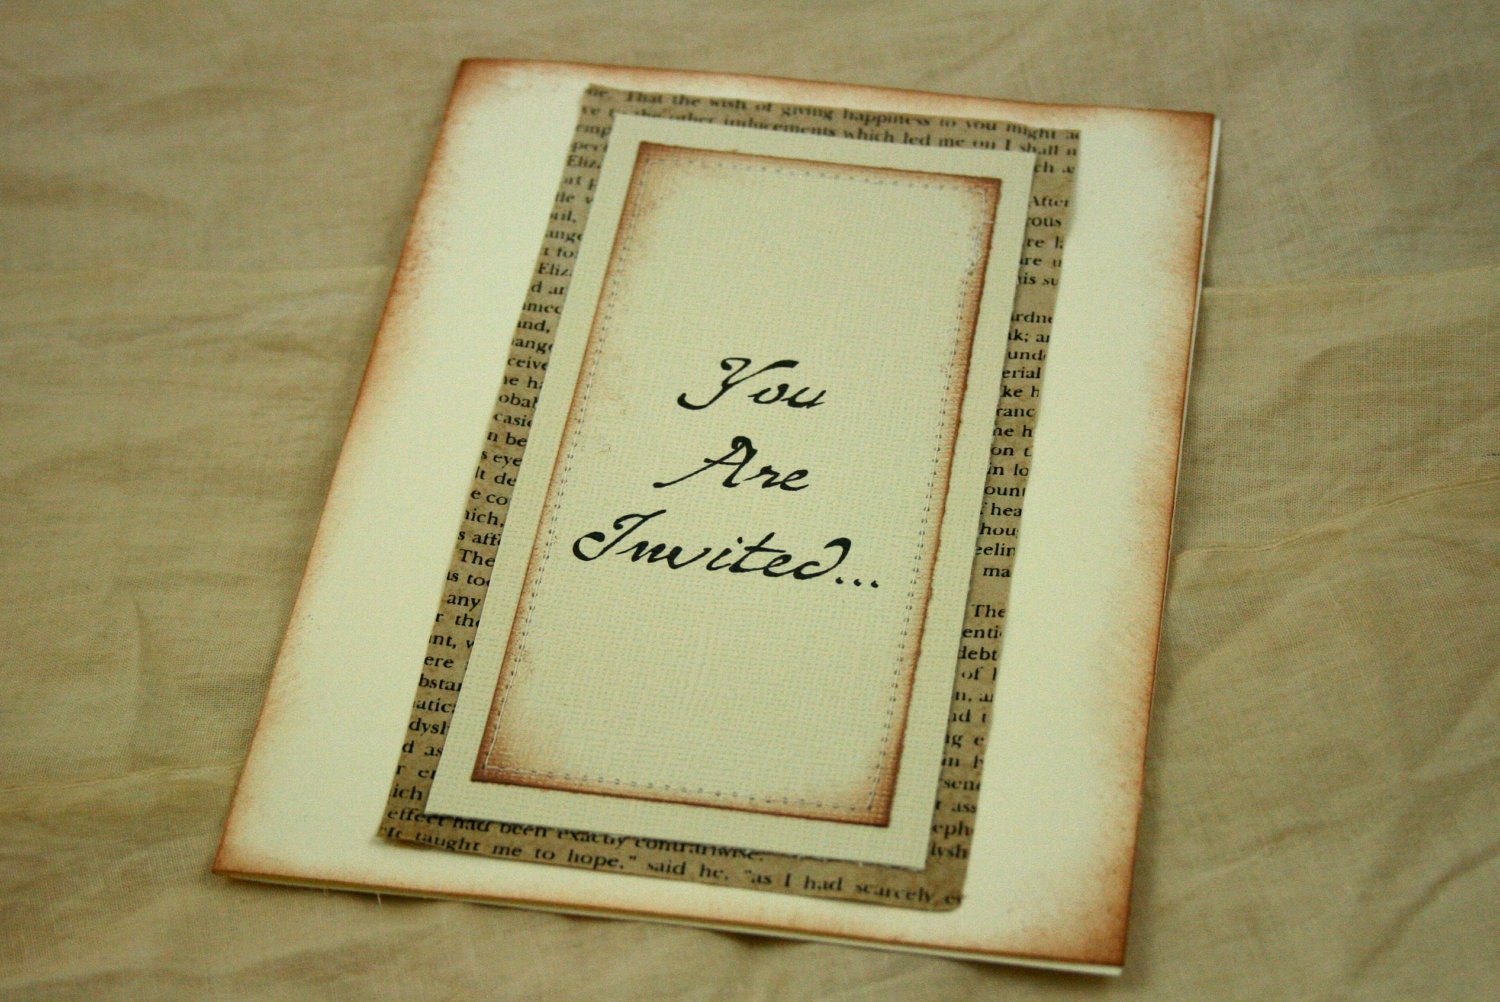 antique wedding invitations